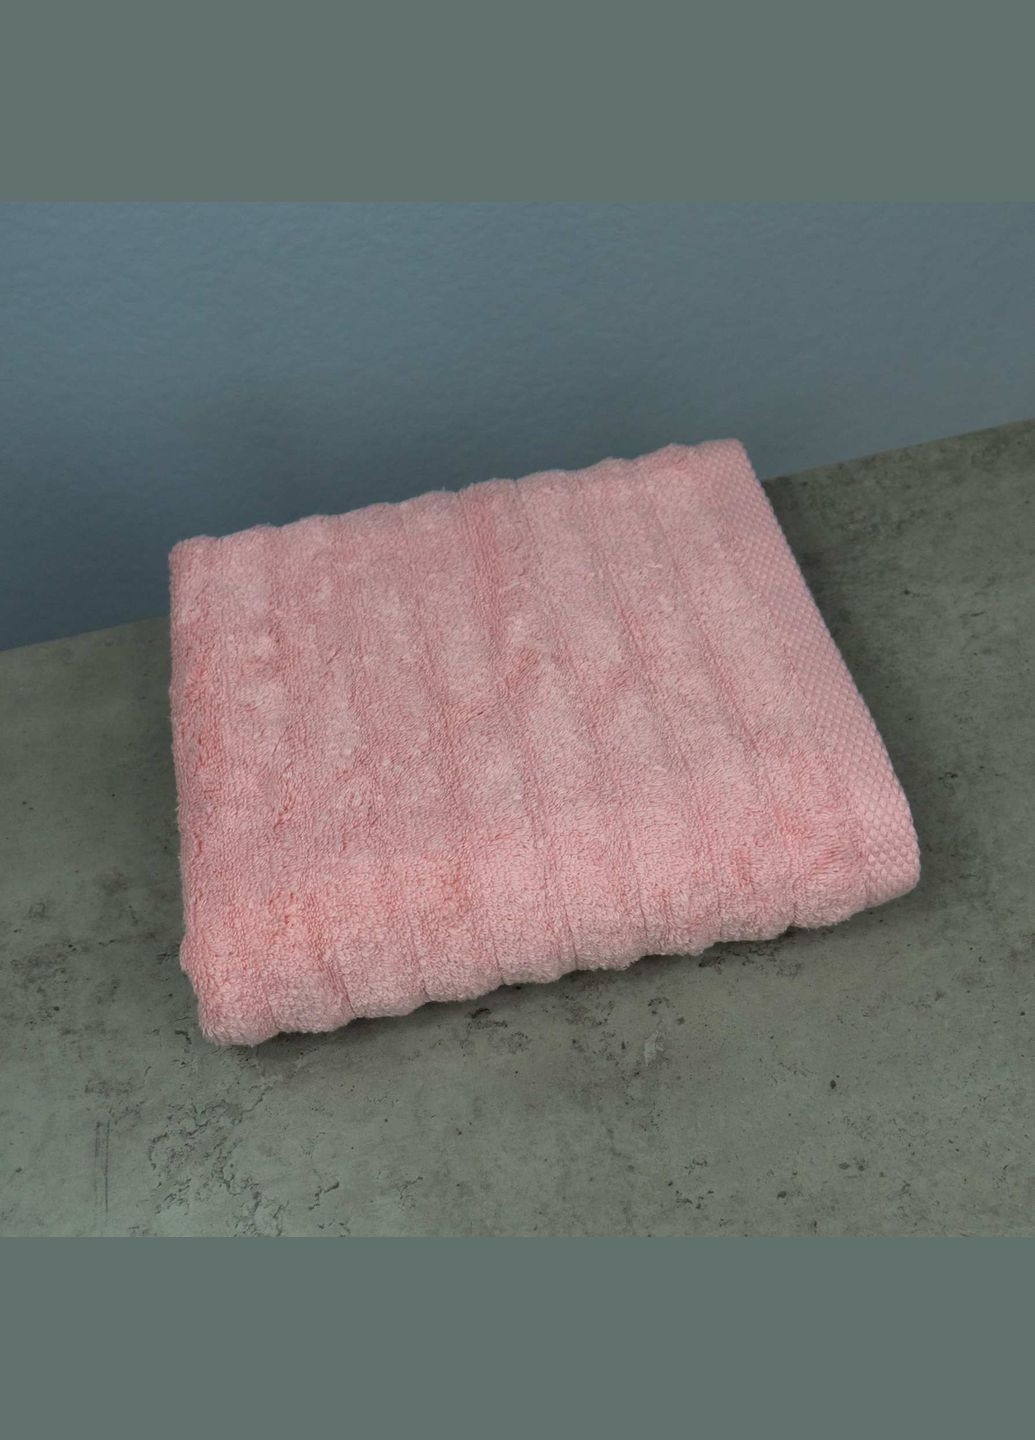 GM Textile полотенце махровое для лица и рук 40x70см премиум качества зеро твист 550г/м2 () розовый производство -